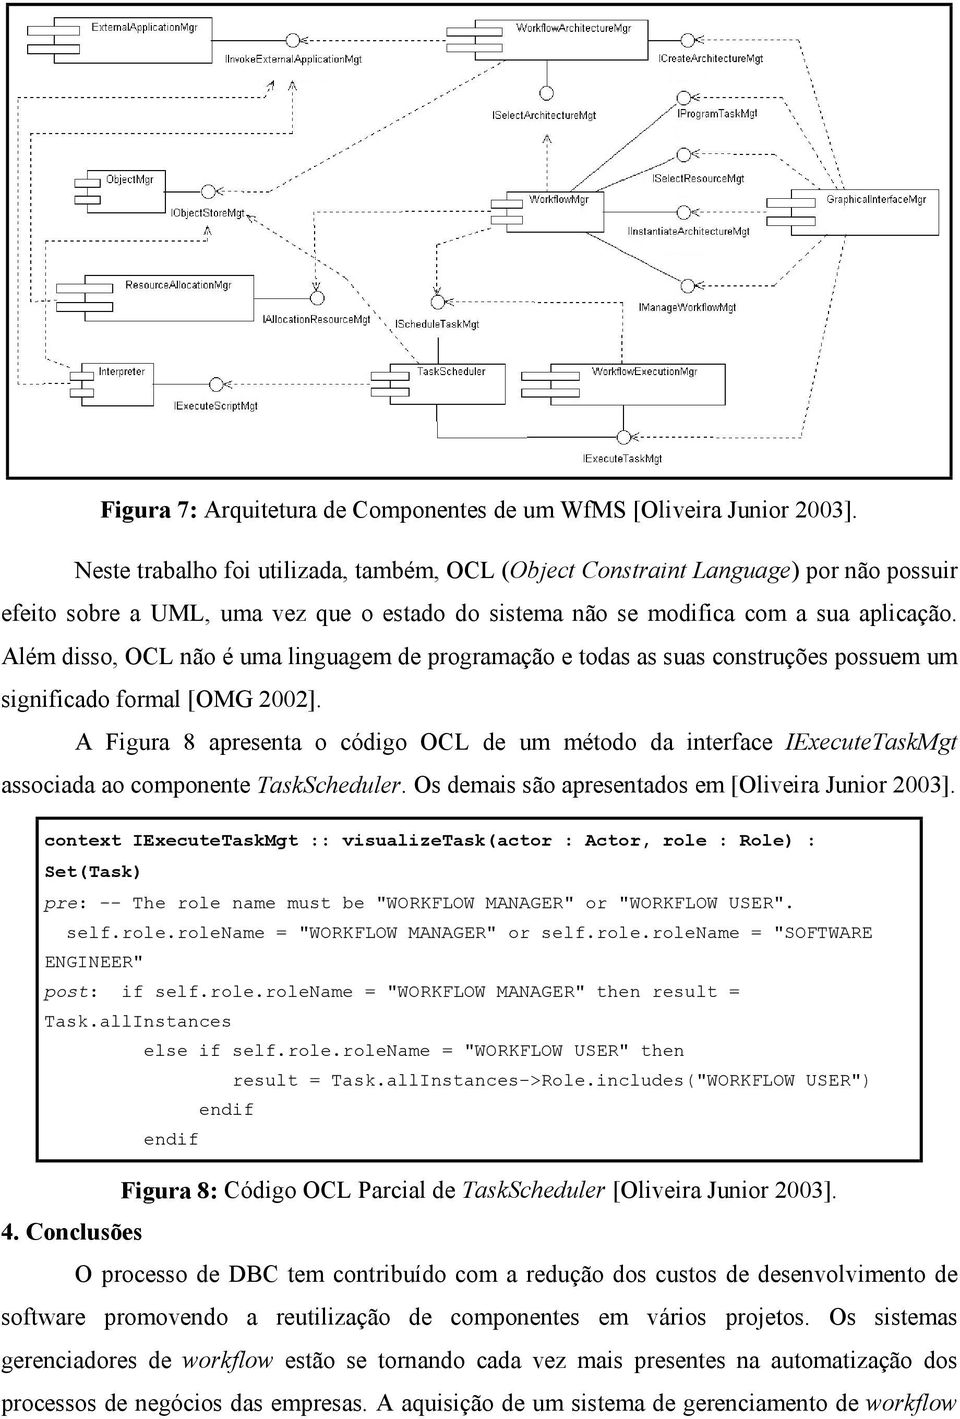 Além disso, OCL não é uma linguagem de programação e todas as suas construções possuem um significado formal [OMG 2002].